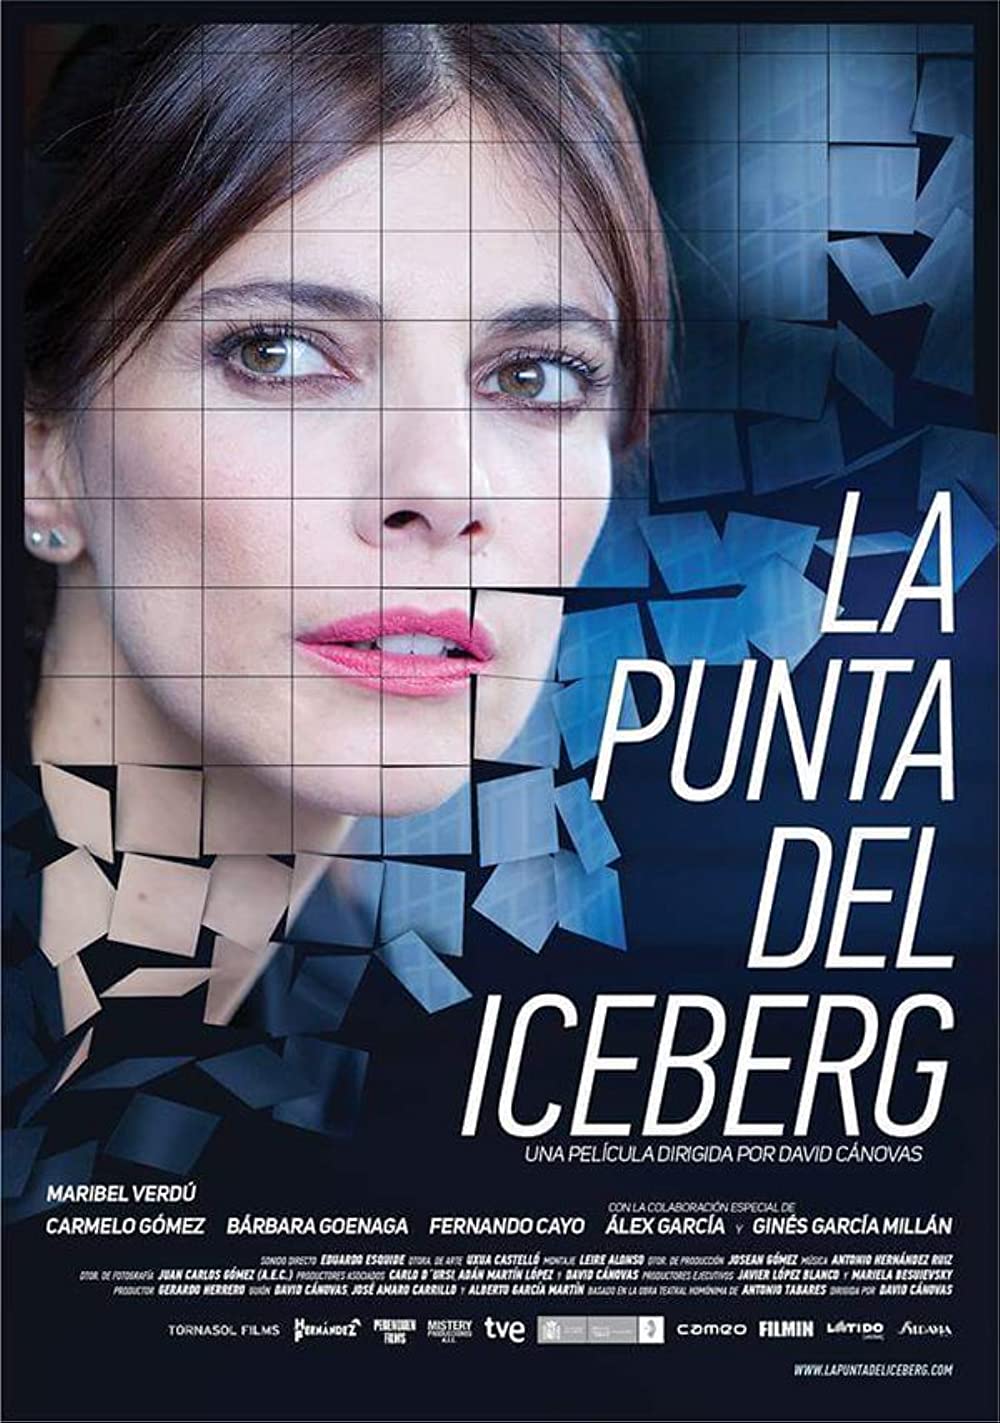 Filmbeschreibung zu La punta del iceberg